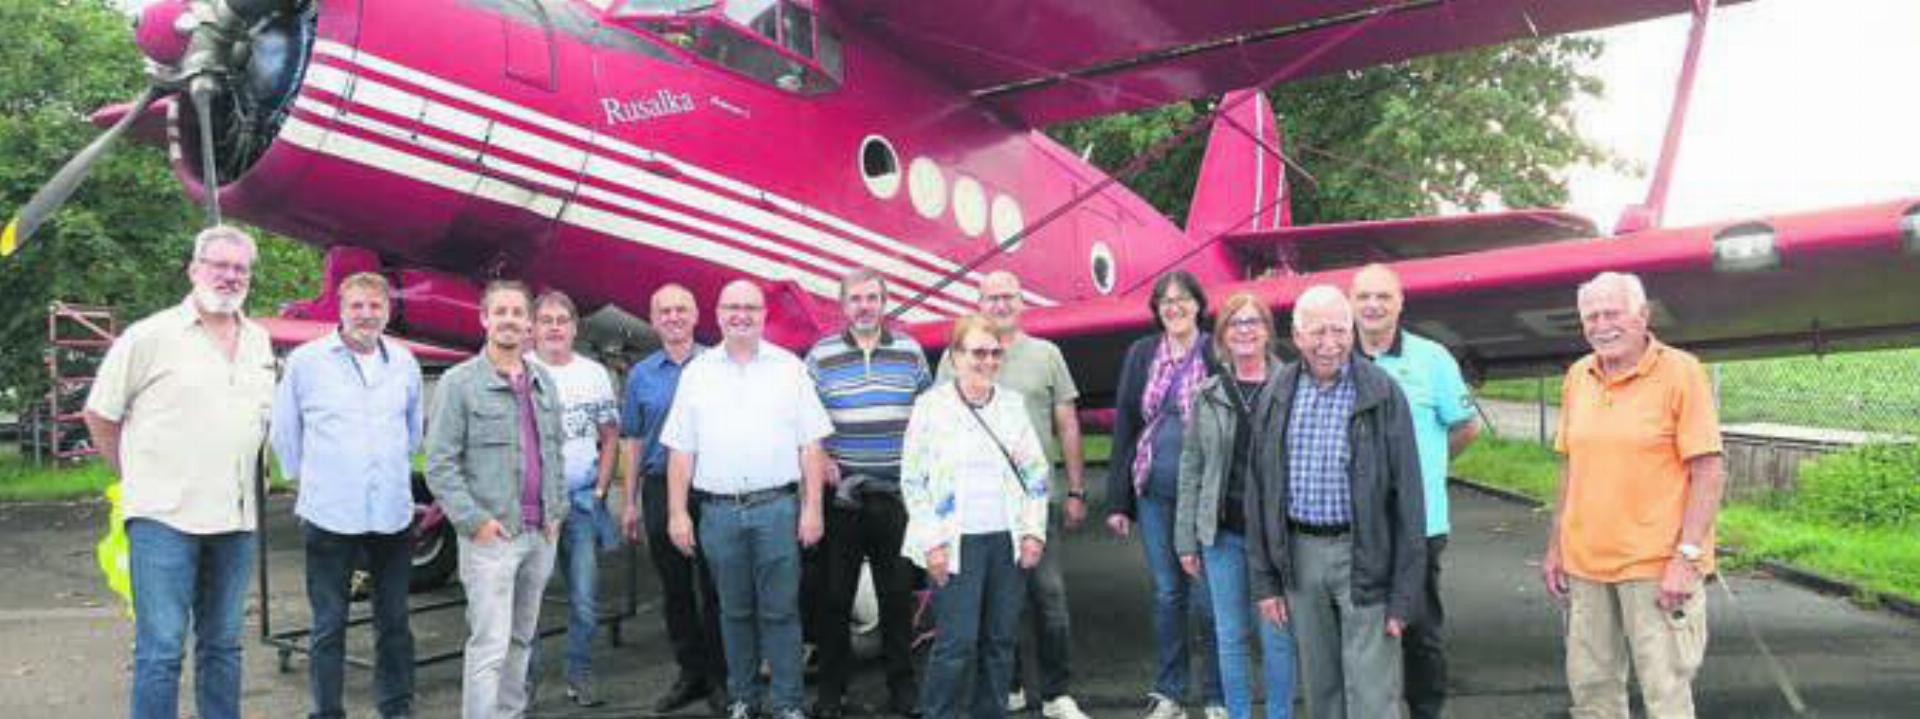 Mitglieder des Gewerbevereins vor dem bekannten roten Doppeldecker, der Antonov. Bild: zg